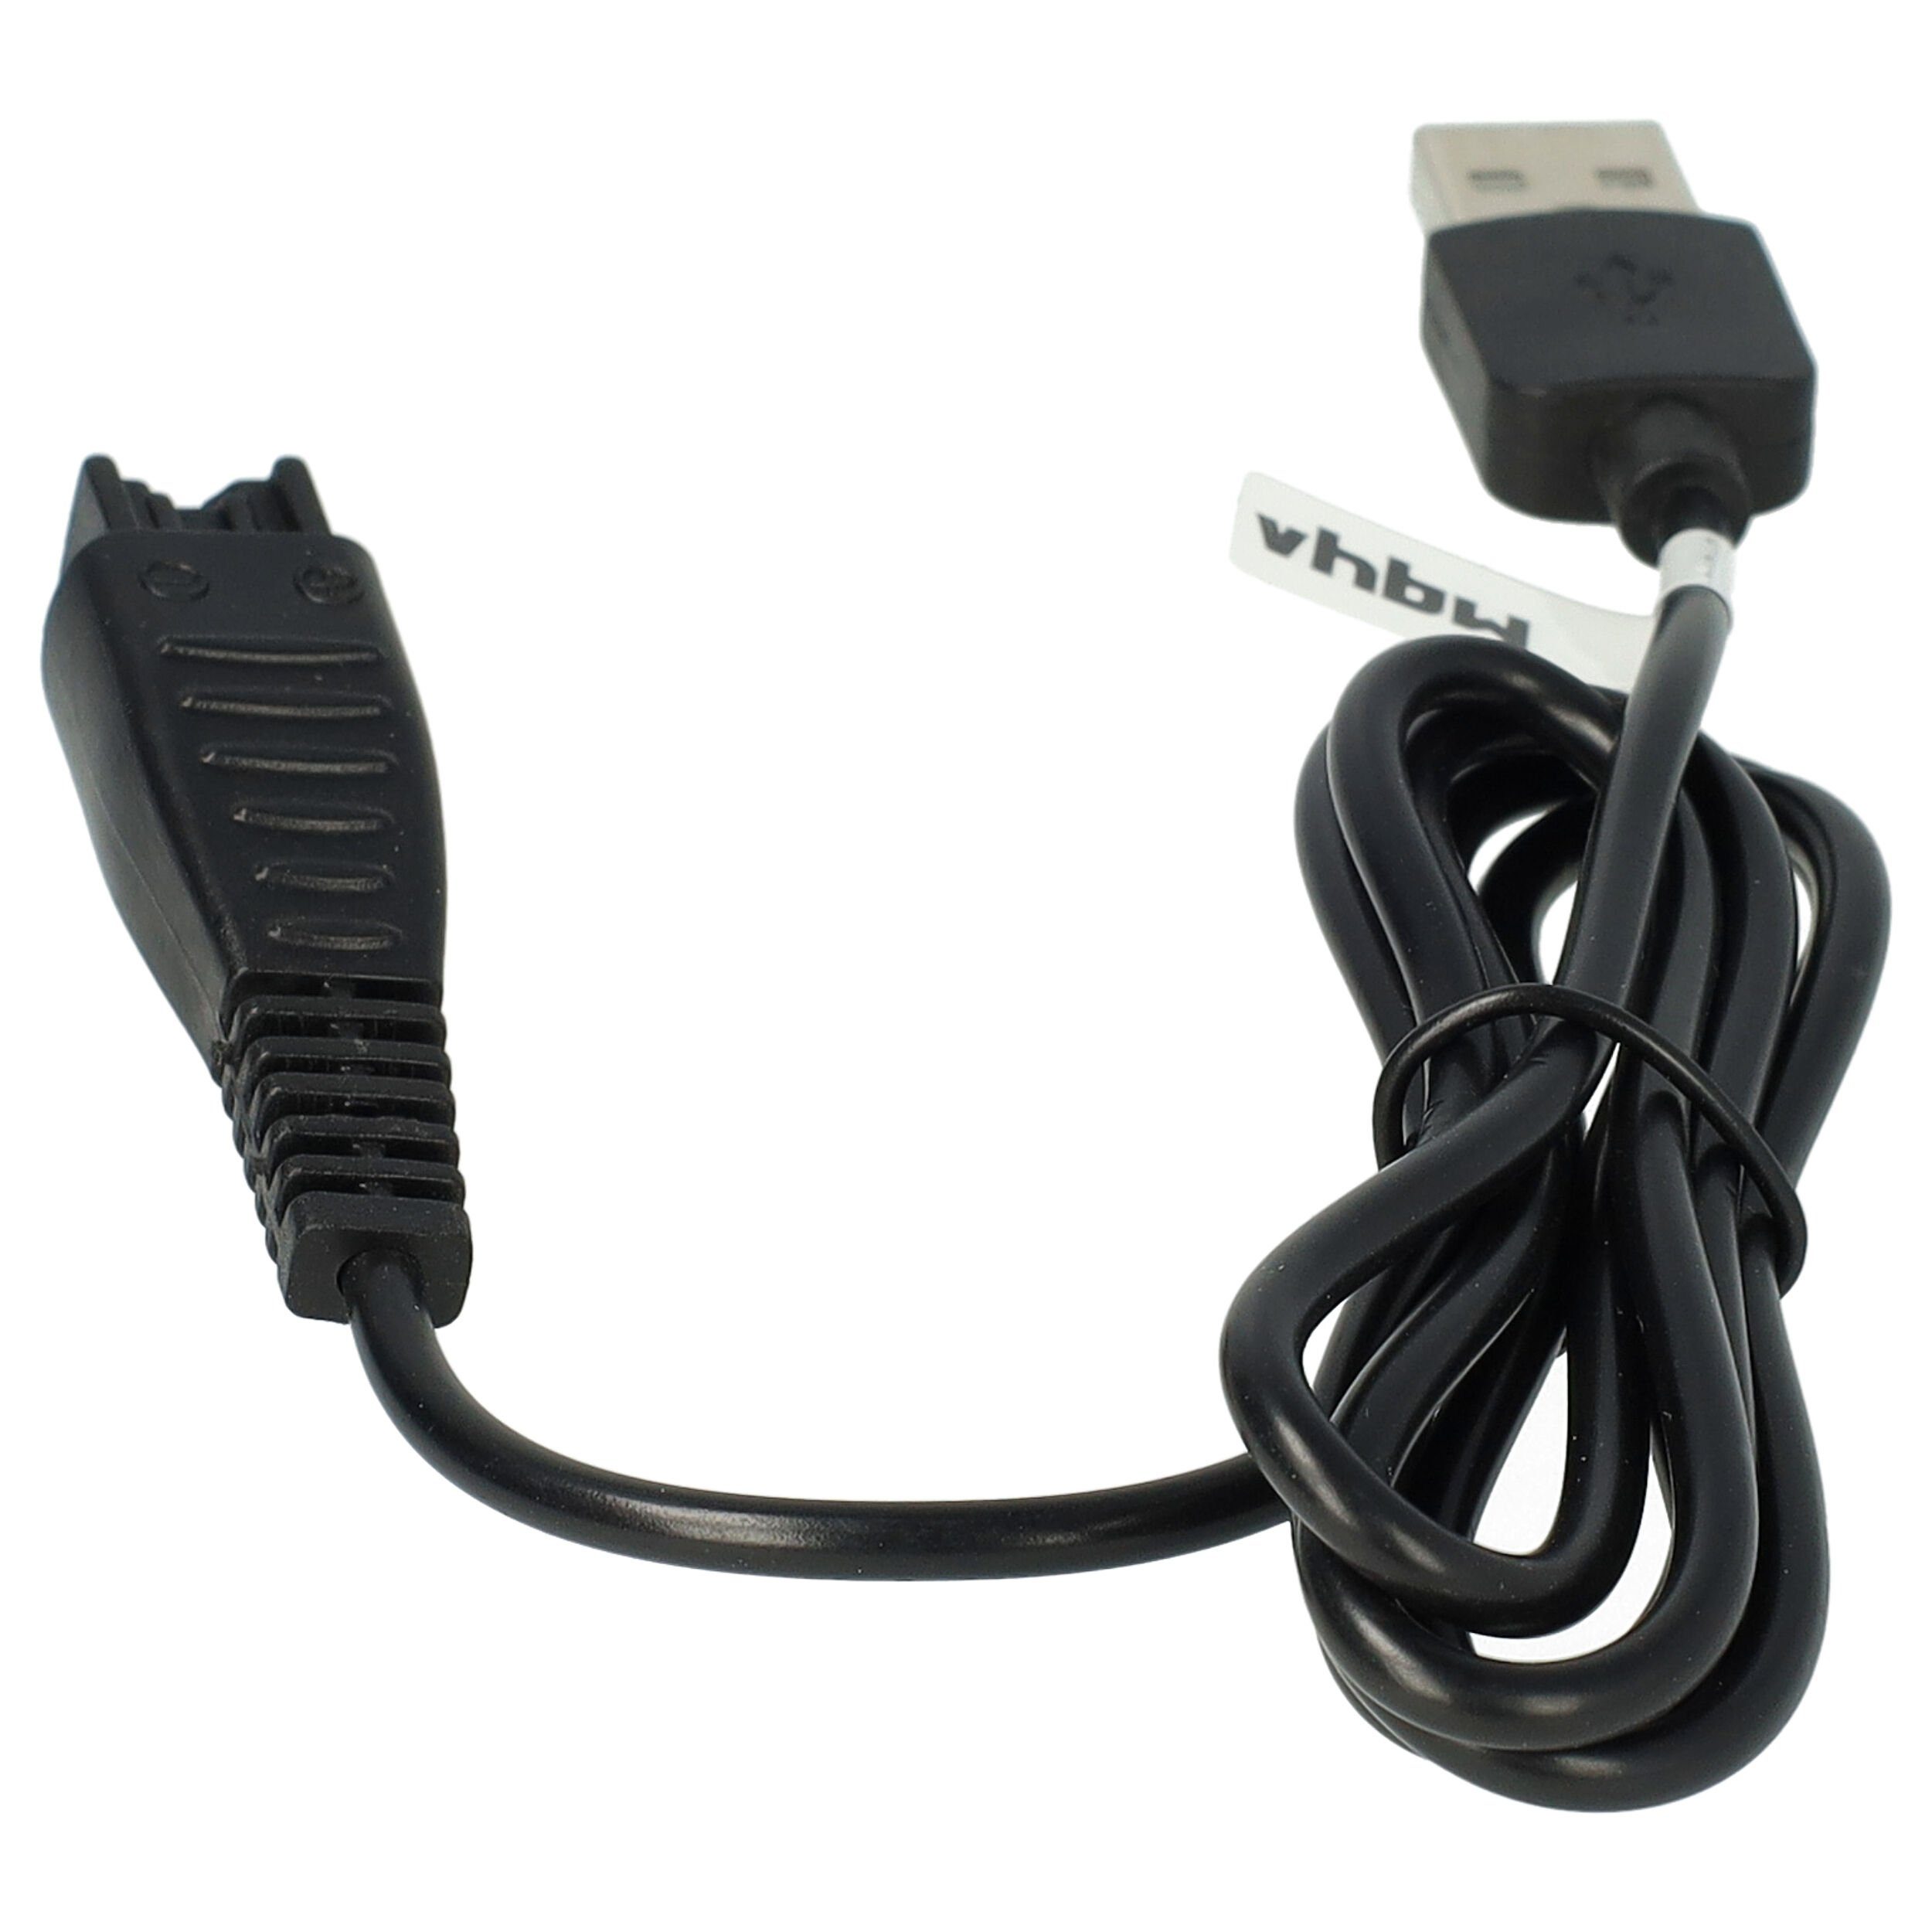 Elektro-Kabel für ES-RT87 passend ES-ST21, ES-RT67, Haushalt Panasonic Rasierer vhbw